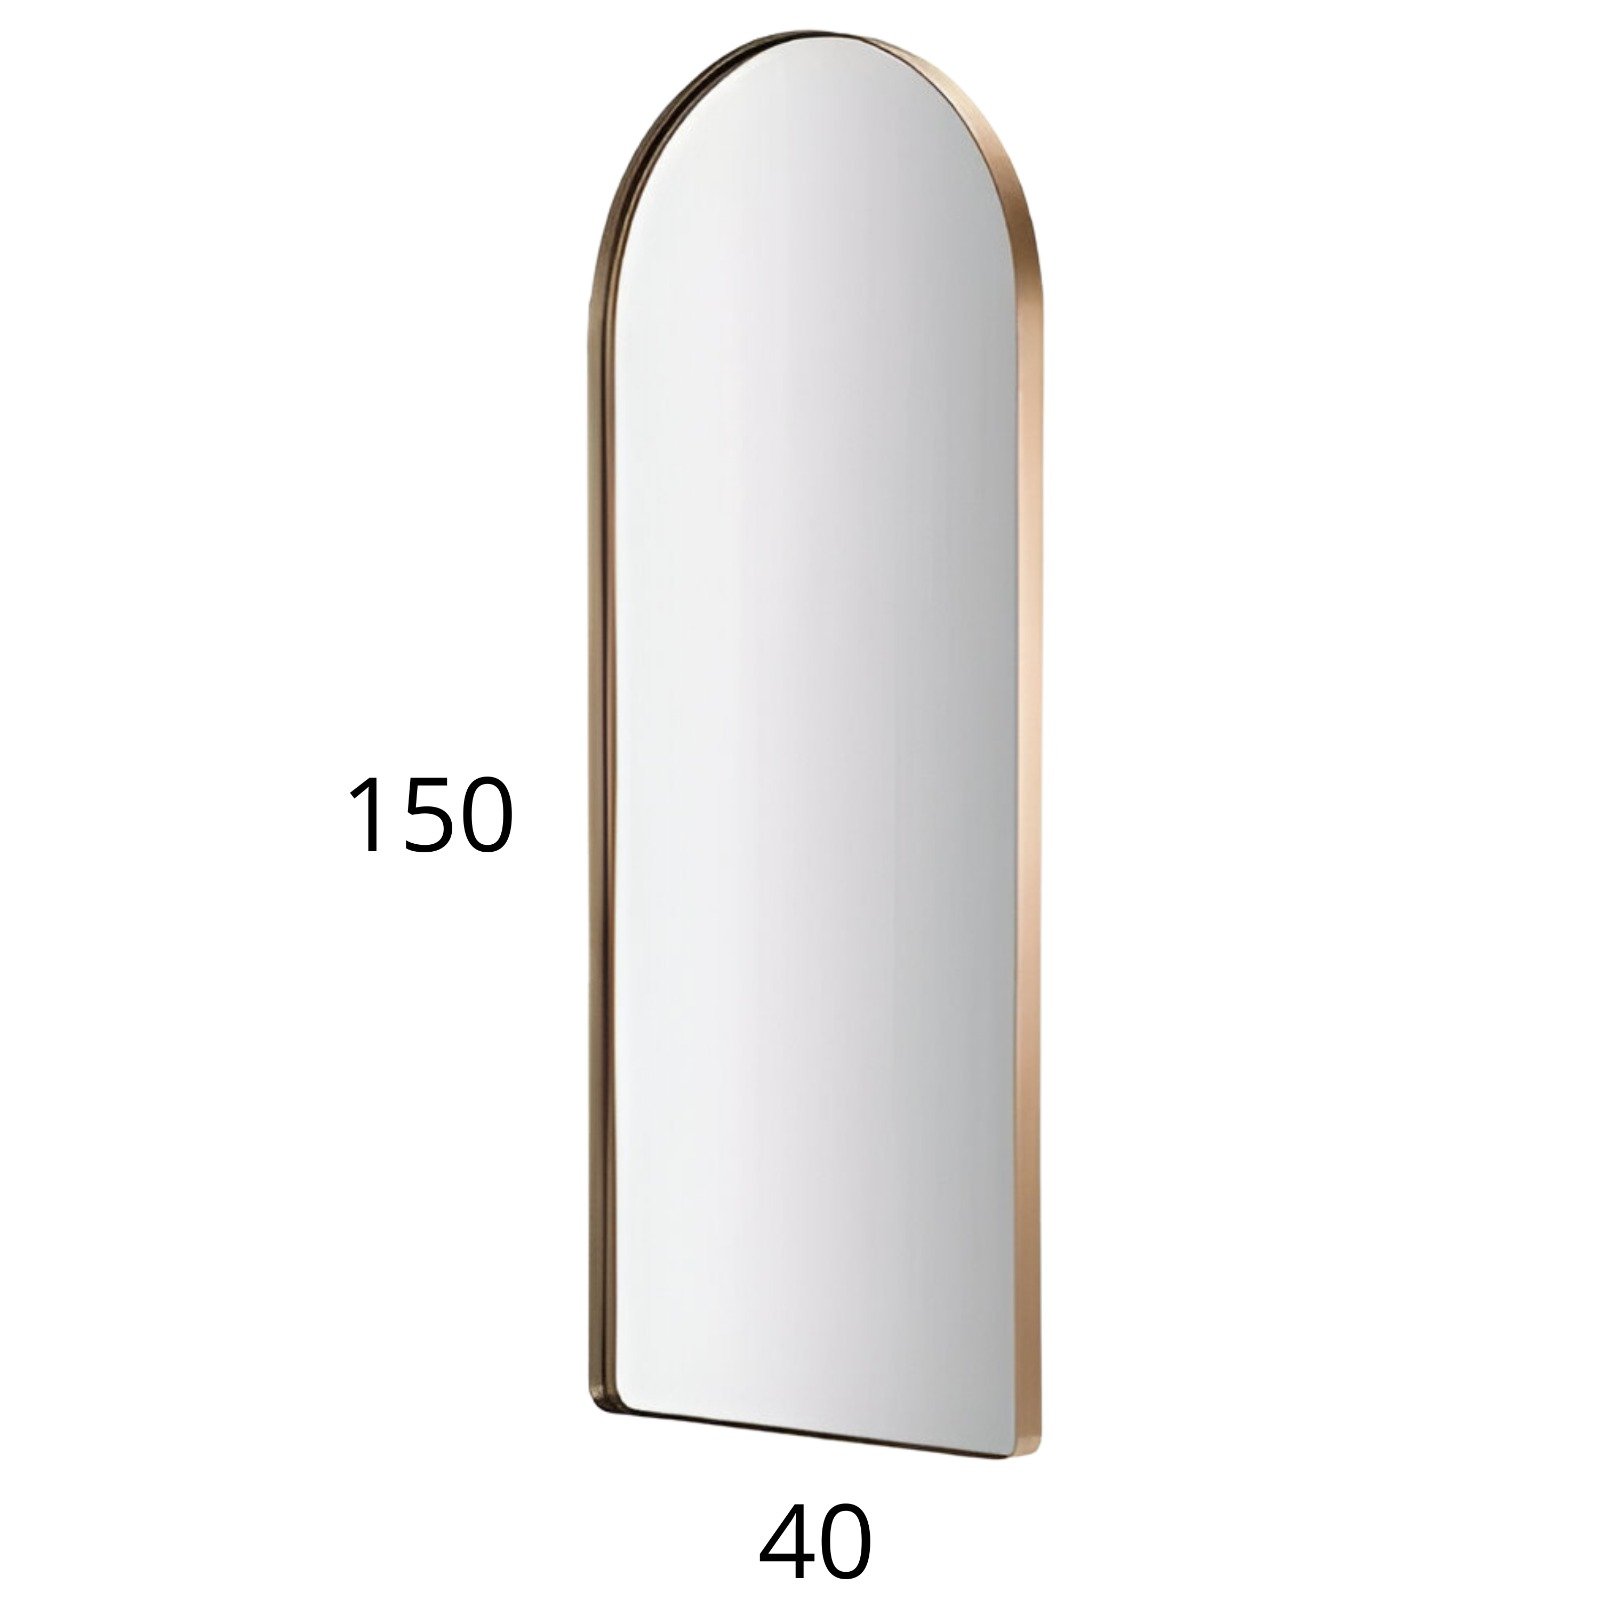 Espelho Grande Corpo Inteiro Oval Base Reta com Moldura em Metal Industrial 150 X 40 Cm Dourado - 3